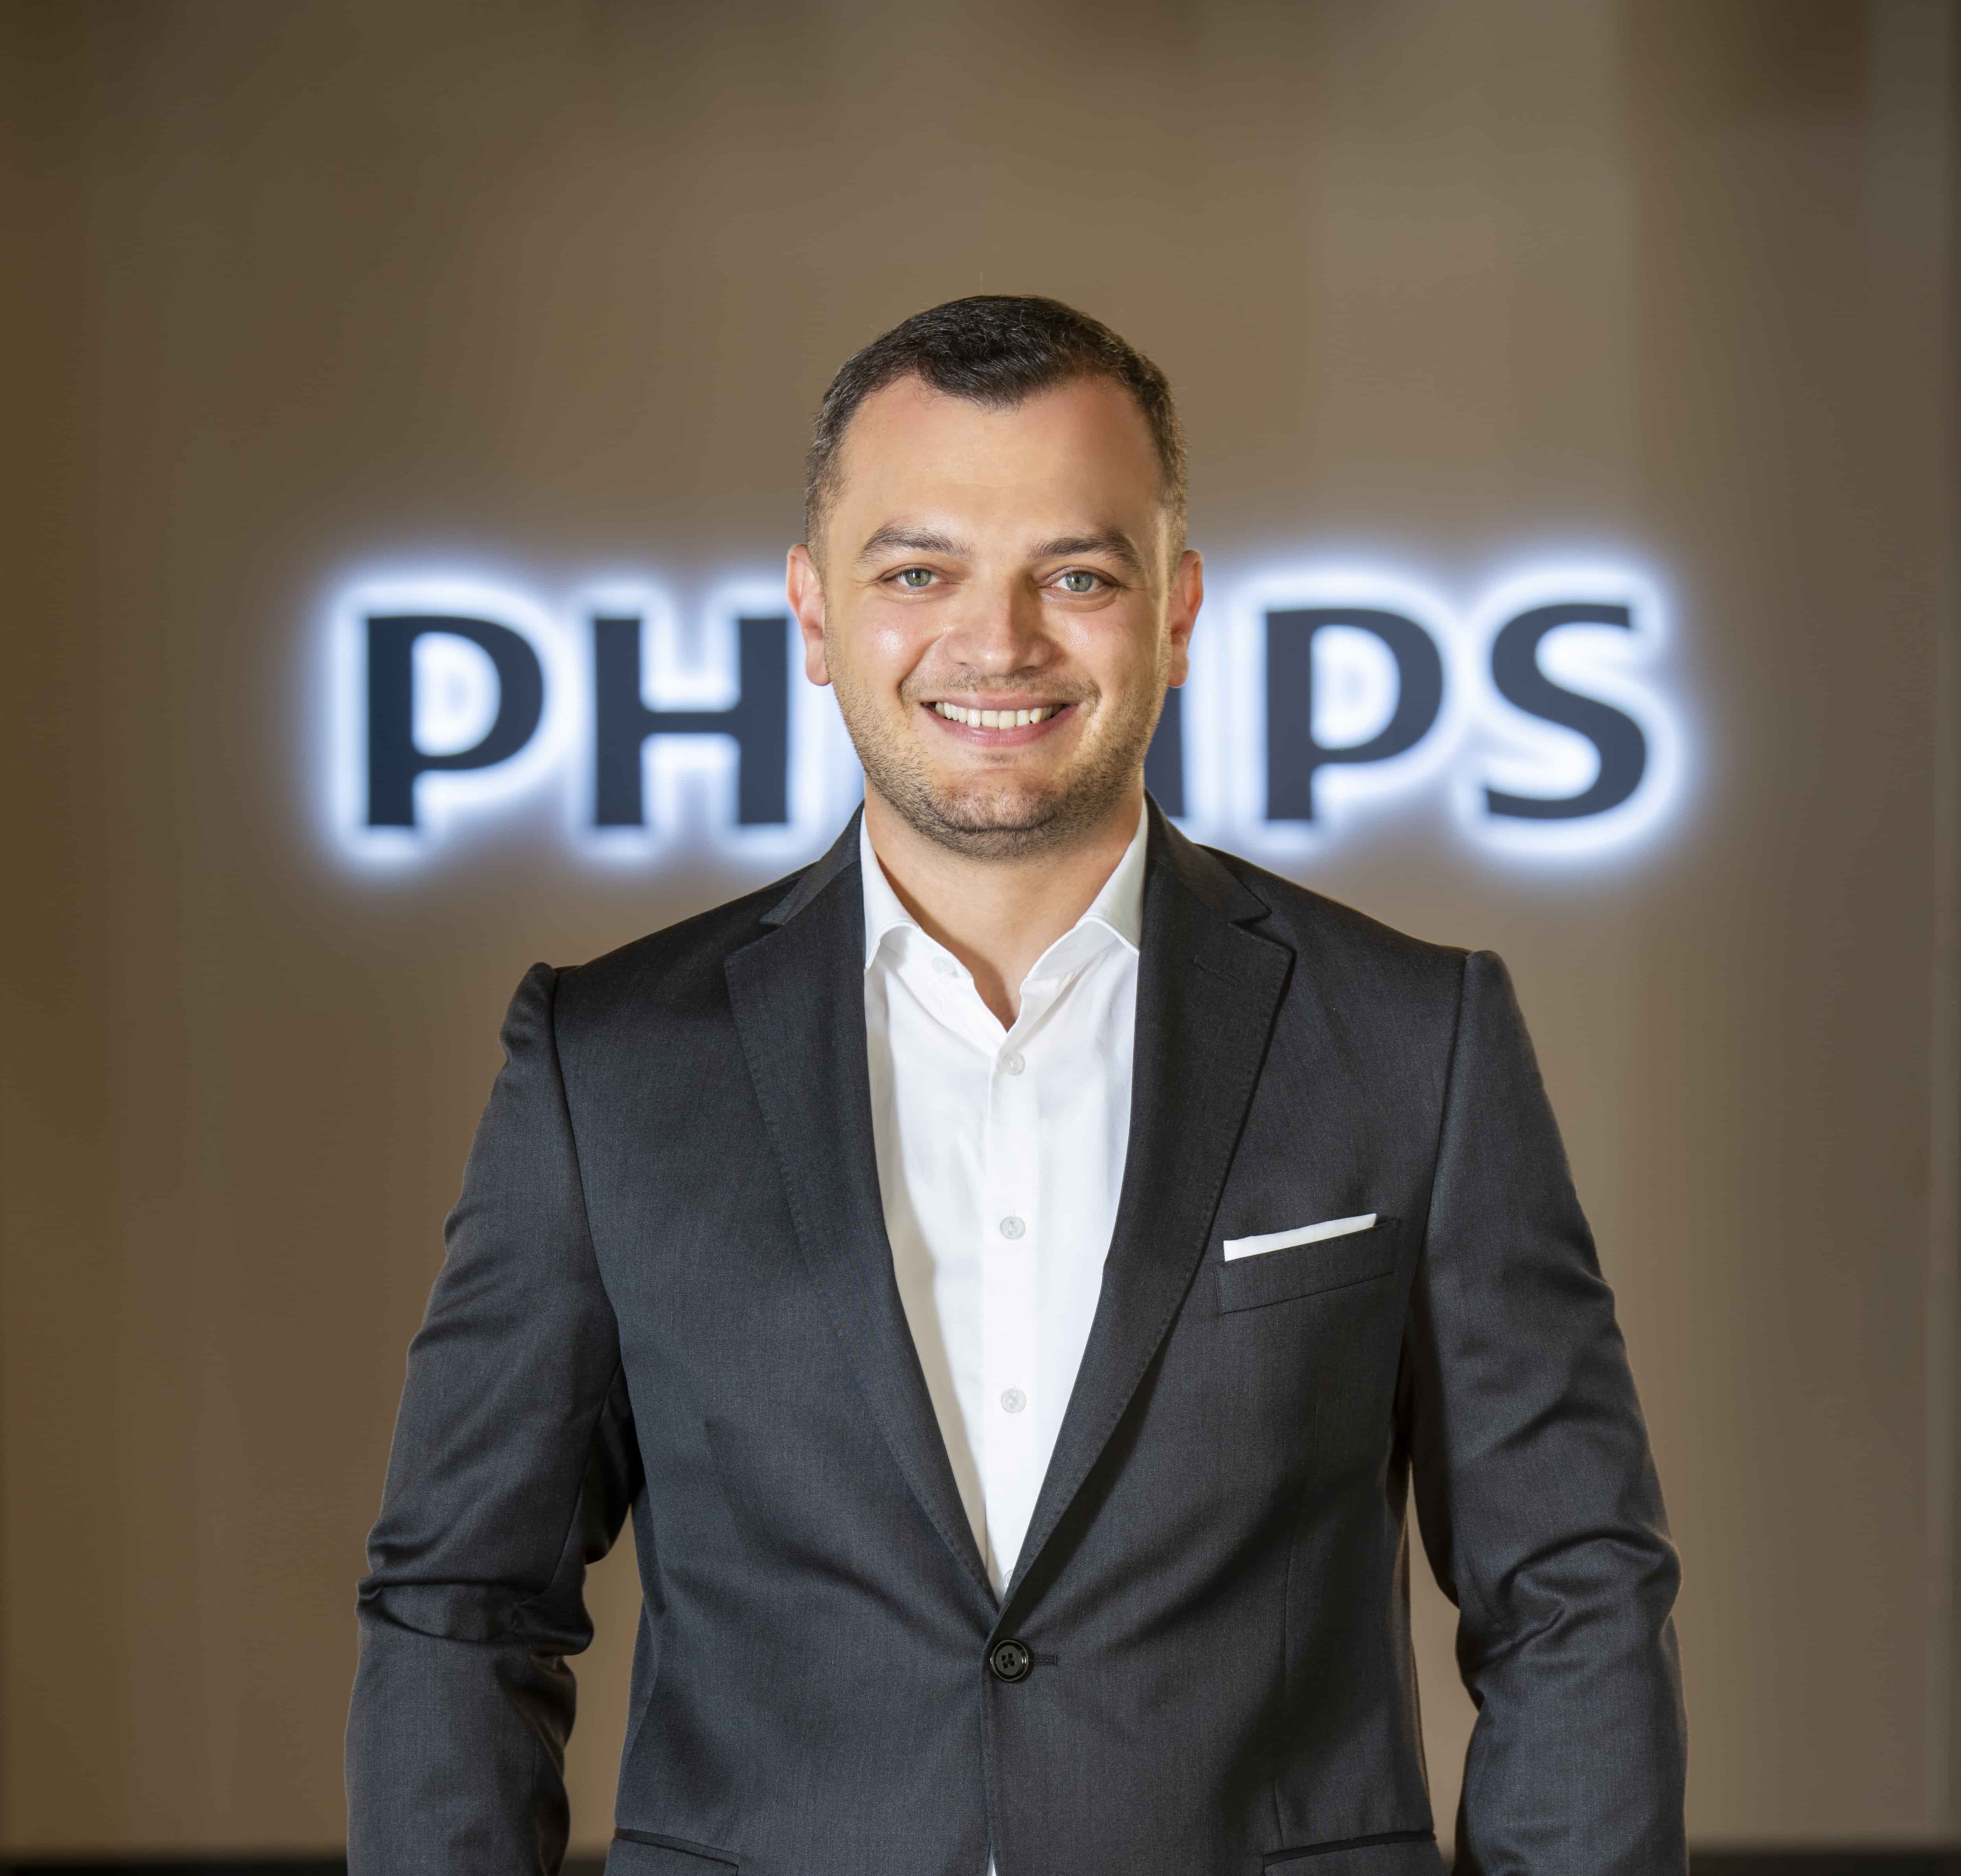 Sinan Kebapcı Philips Kişisel Sağlık Türkiye Ülke Müdürlüğüne Atandı 